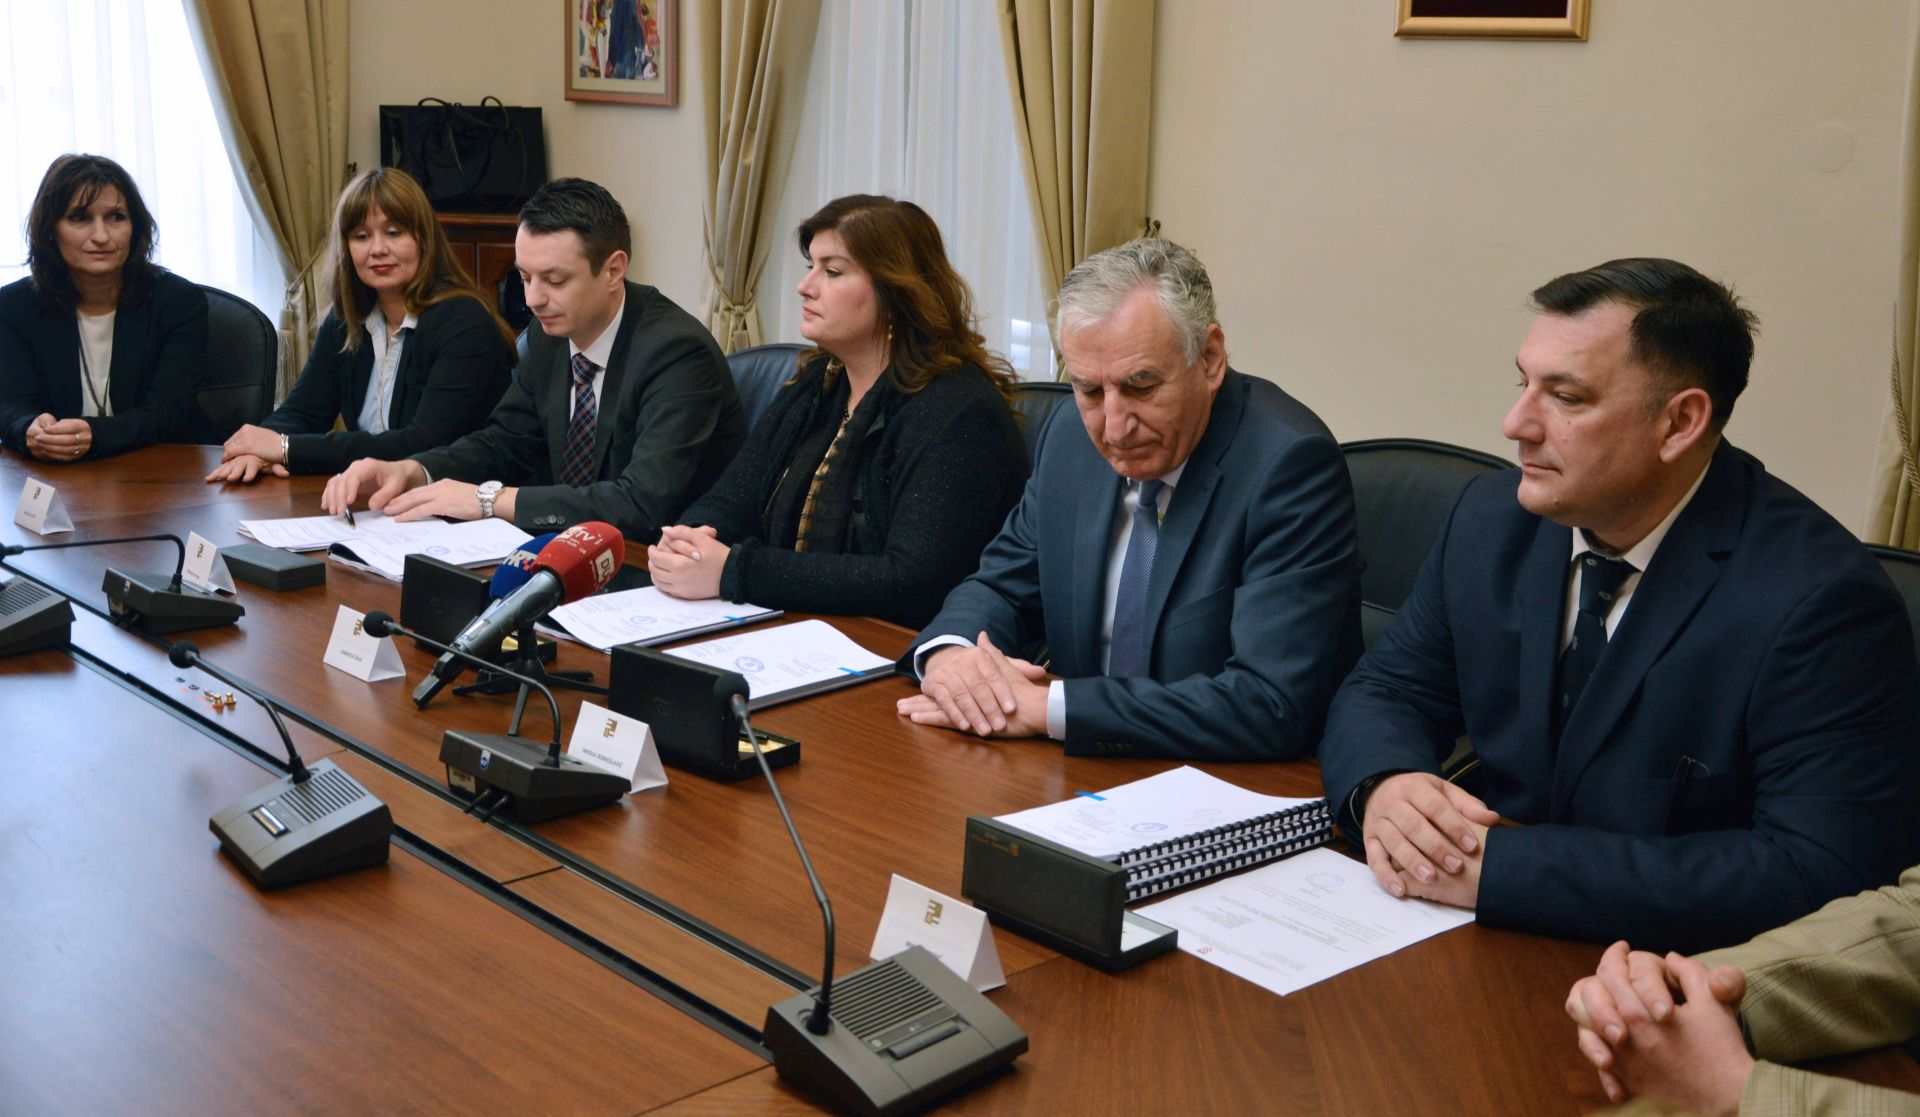 Žalac u Dubrovniku potpisala dva ugovora iz područja zdravstva vrijedna 25,9 milijuna kuna